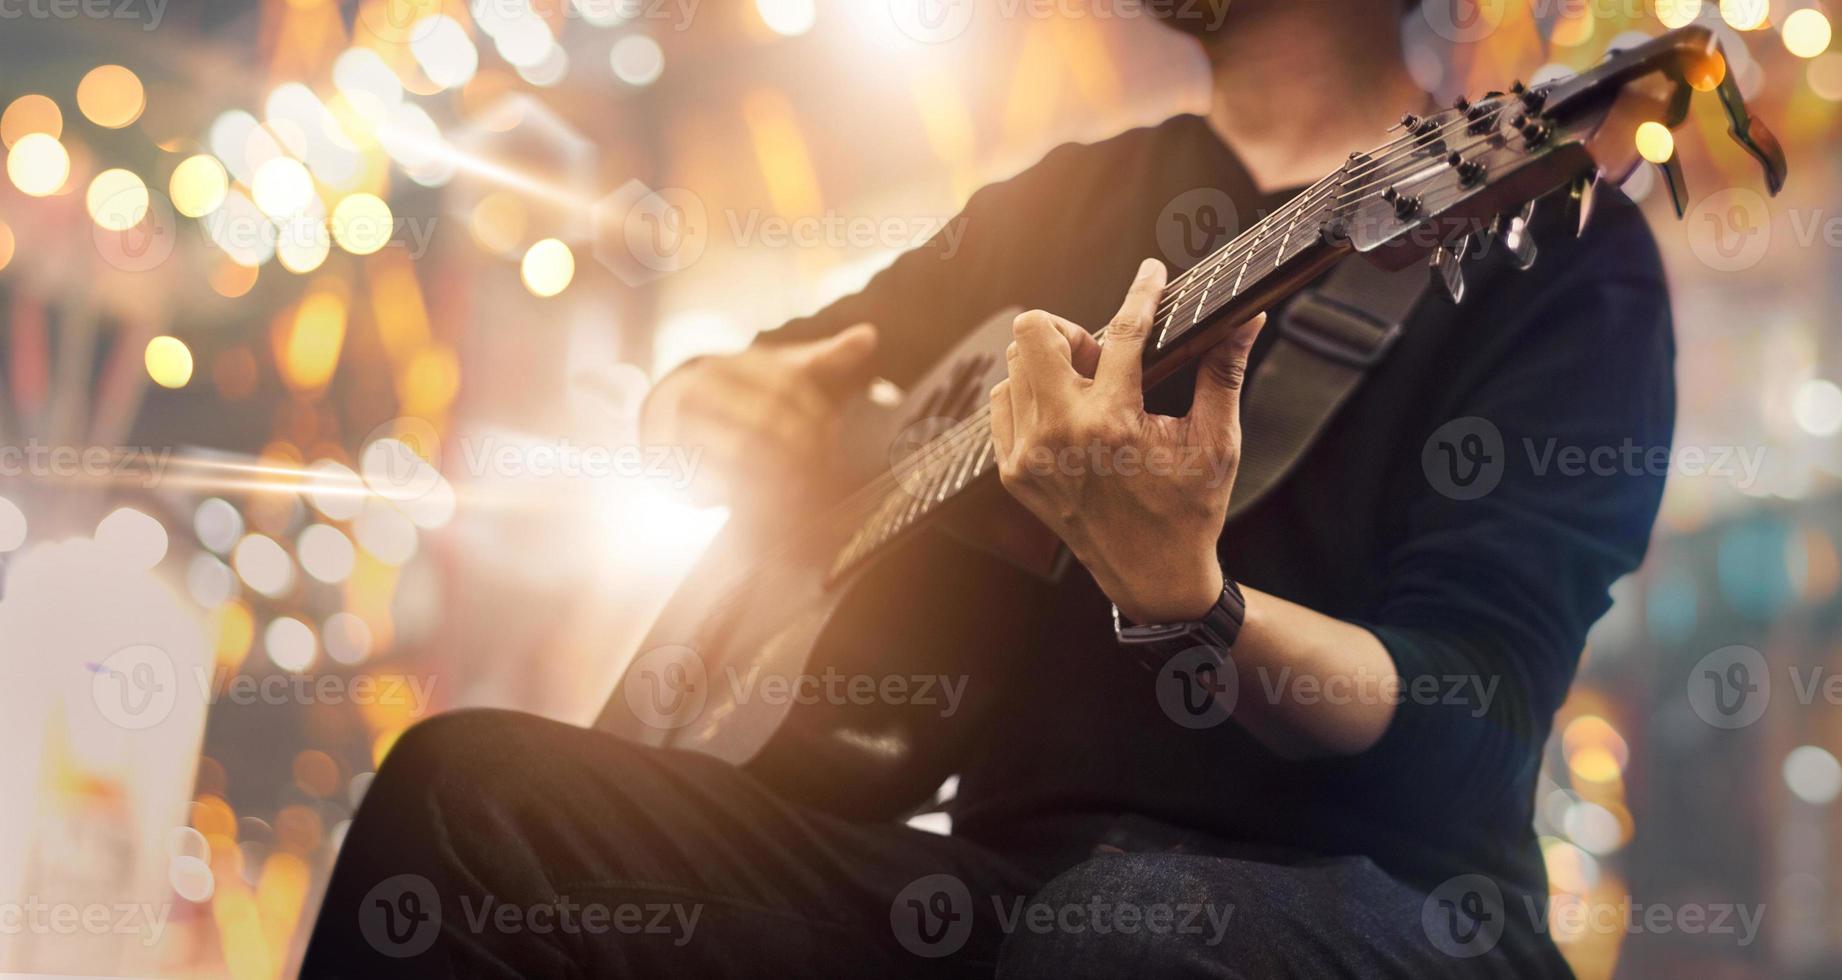 gitarist op het podium en zingt tijdens een concert voor achtergrond, zacht en wazig concept foto